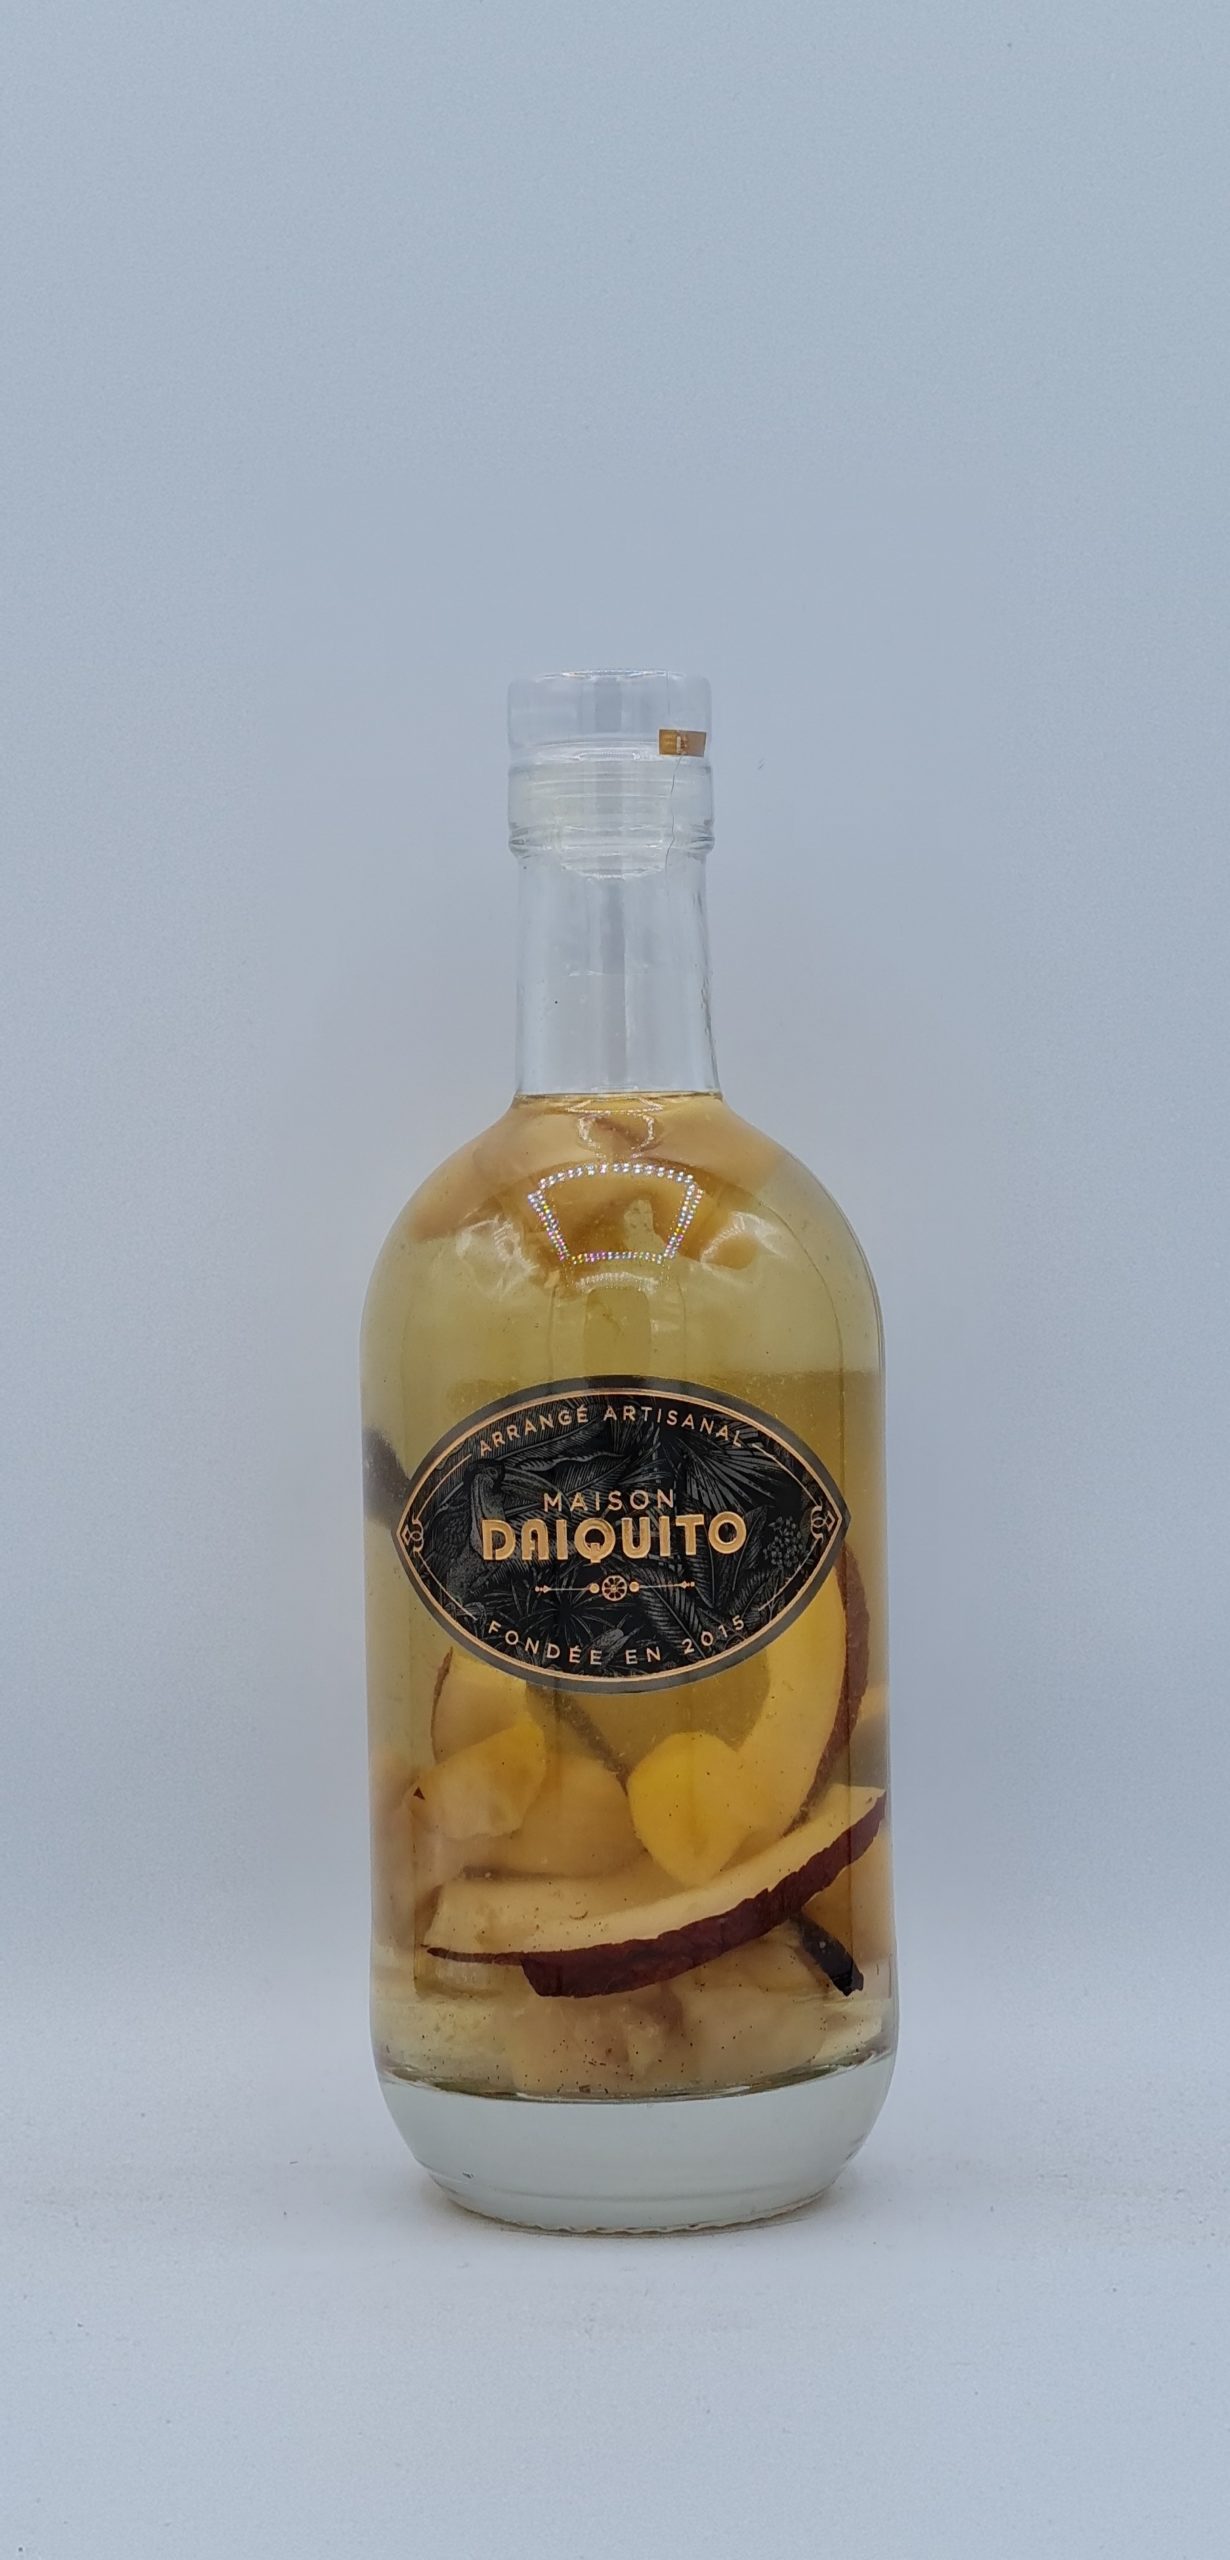 Arrangé Mangue et Noix de Coco 30% Maison Daiquito